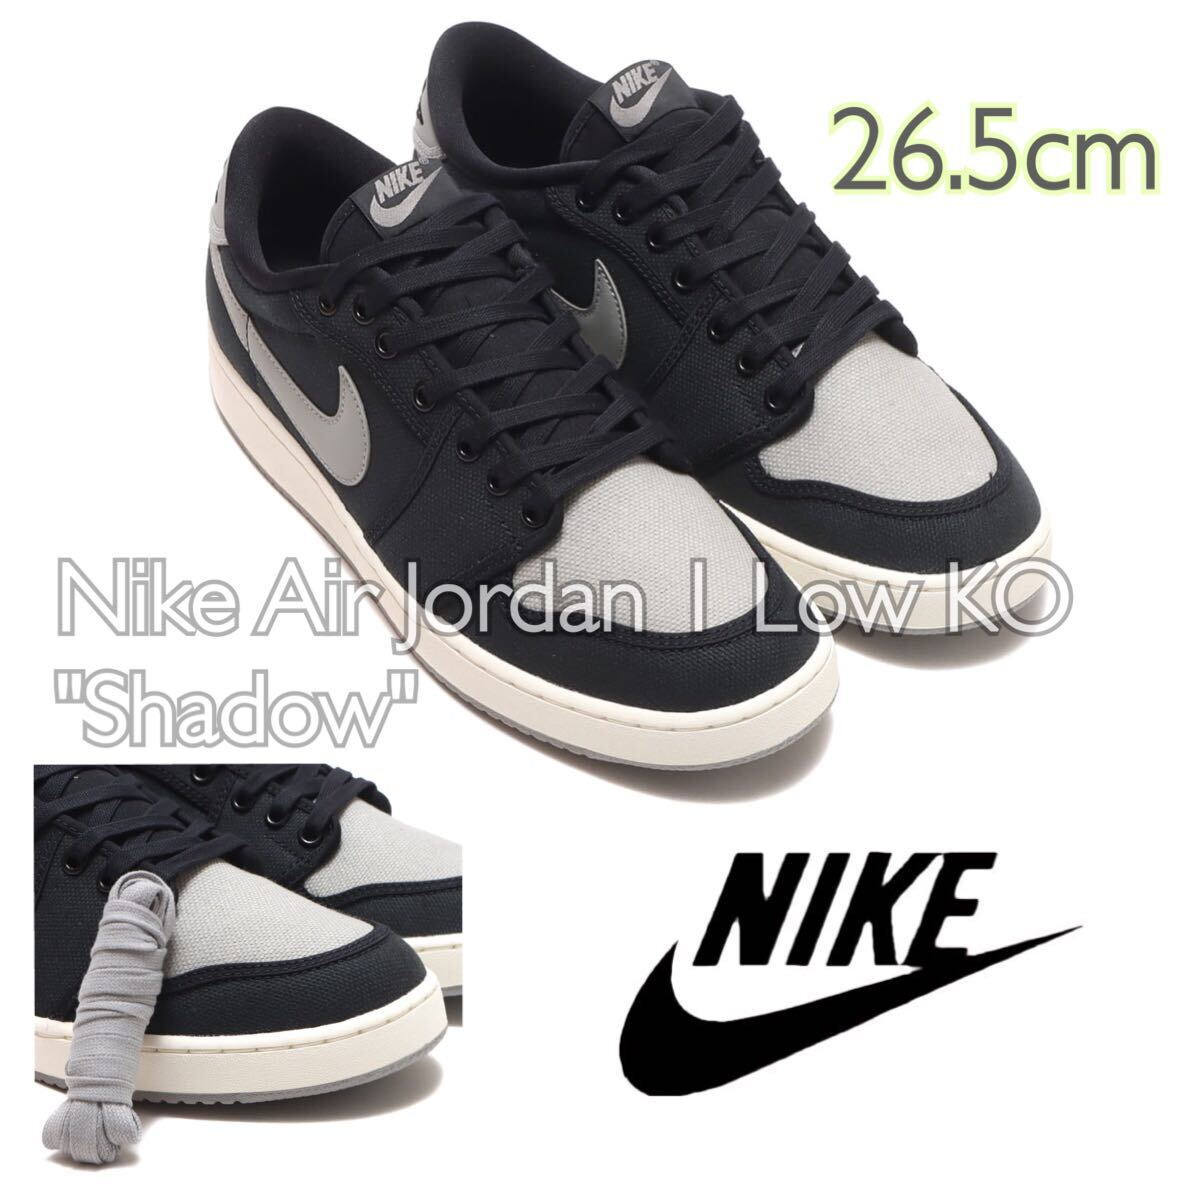 Nike Air Jordan 1 Low KO Shadowナイキ エアジョーダン1 ロー KO シャドウ(DX4981-002)黒26.5cm箱あり